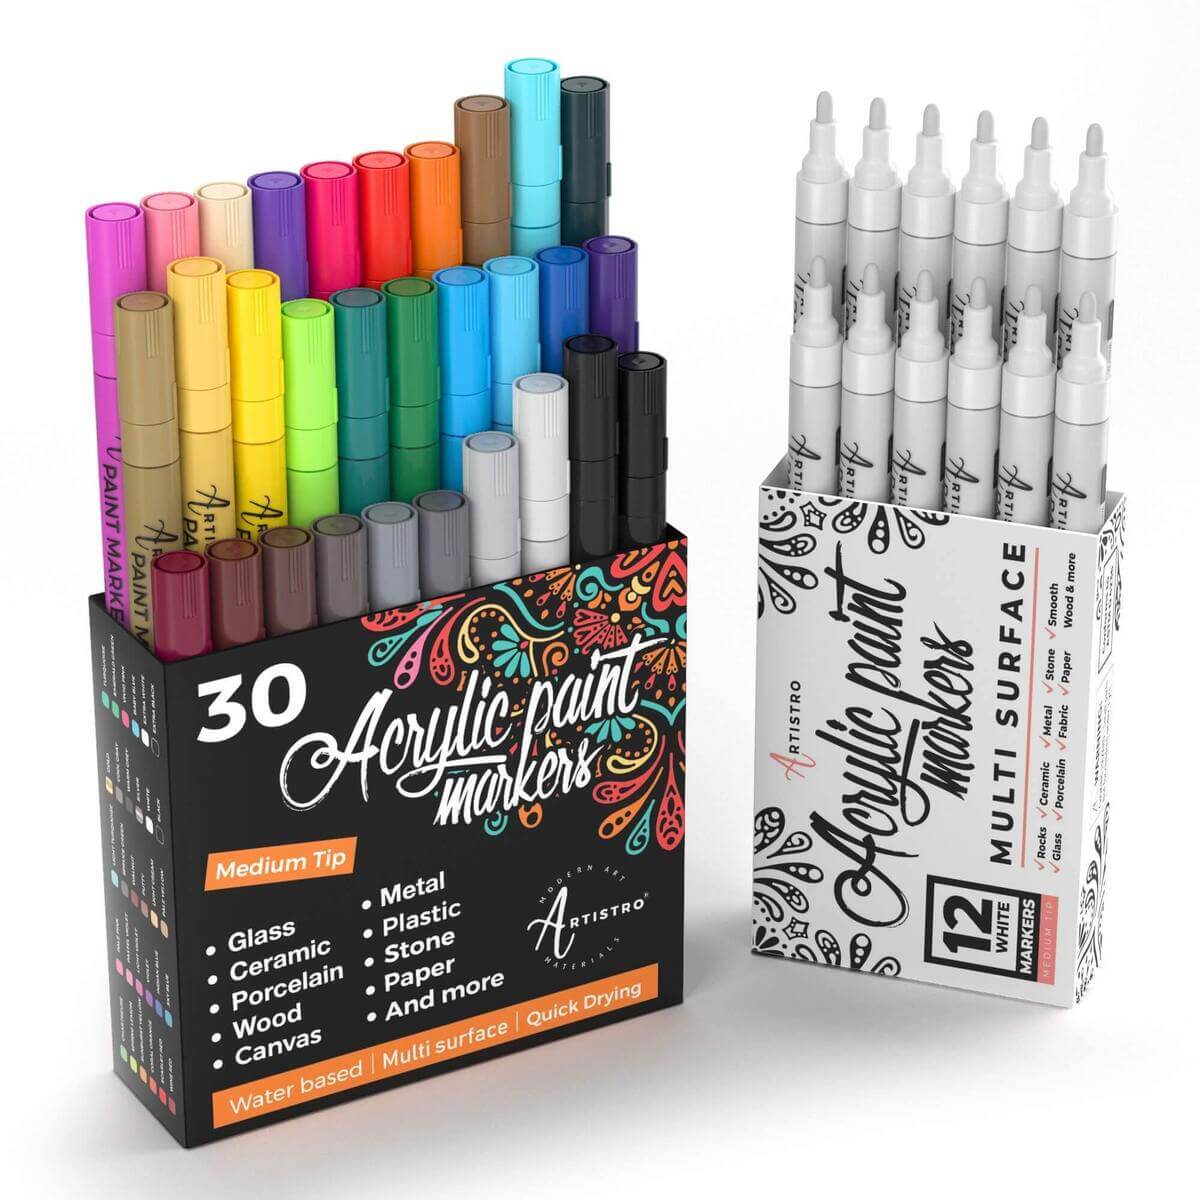 Medium Tip Art Supply Bundle: Colored & White Marker Sets